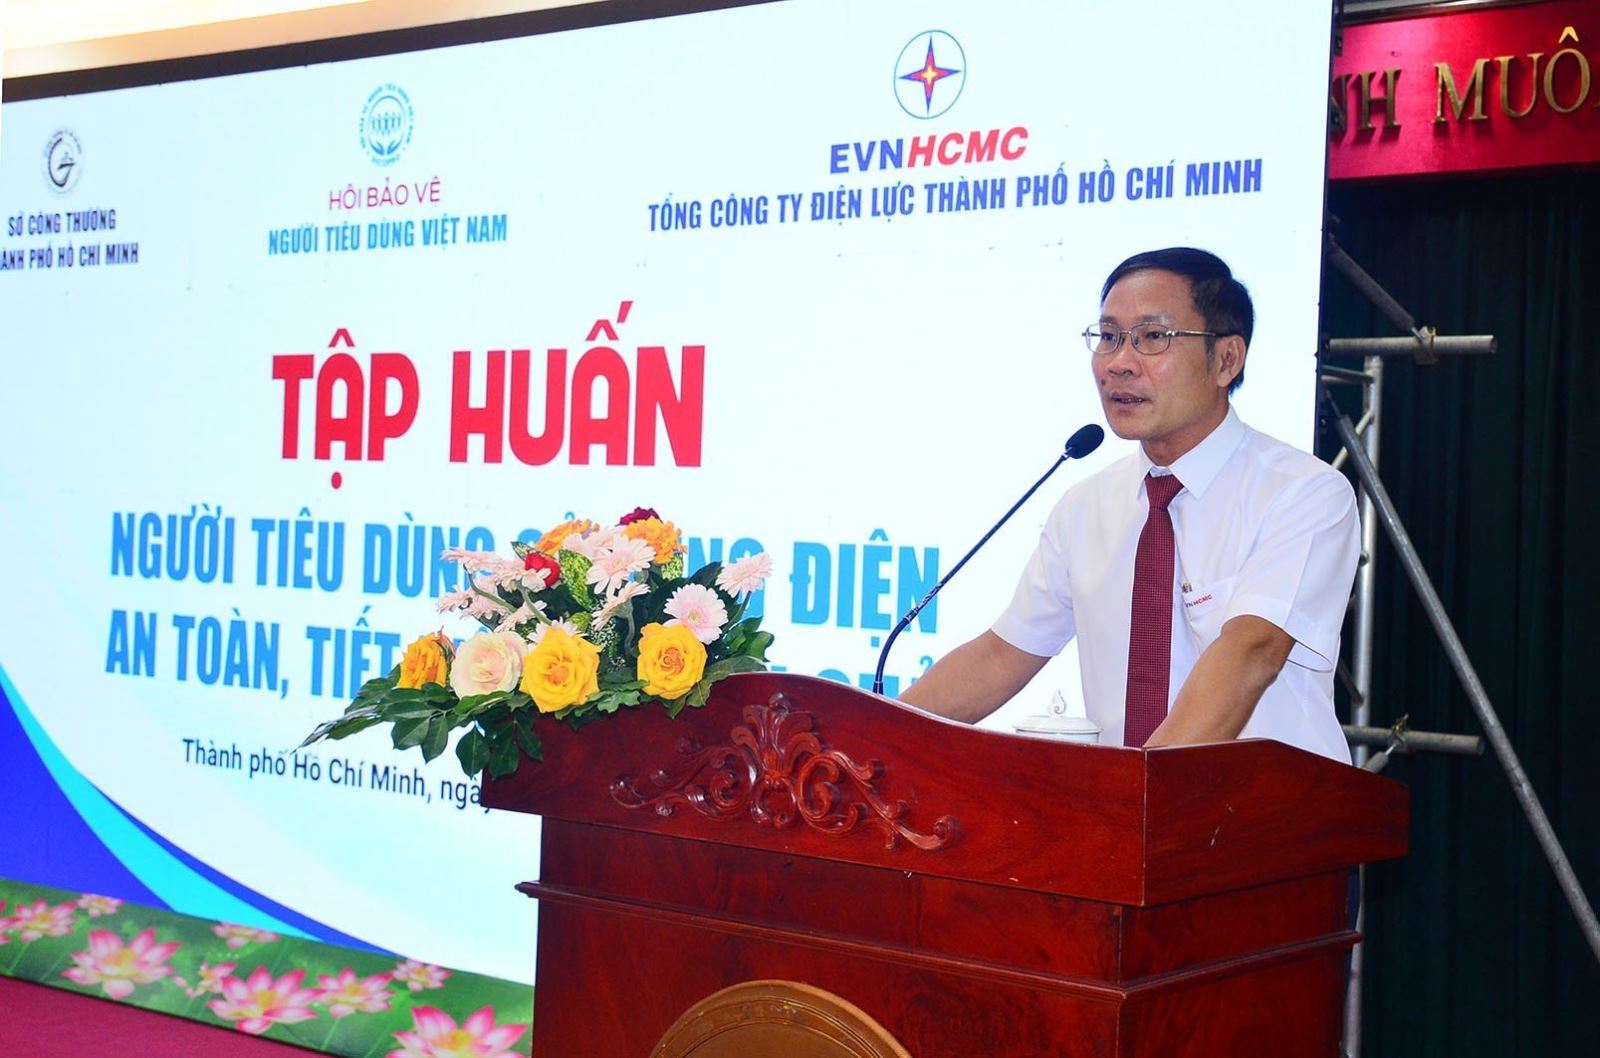 Ông Bùi Trung Kiên – Phó Tổng giám đốc EVNHCMC phát biểu tại buổi tập huấn.